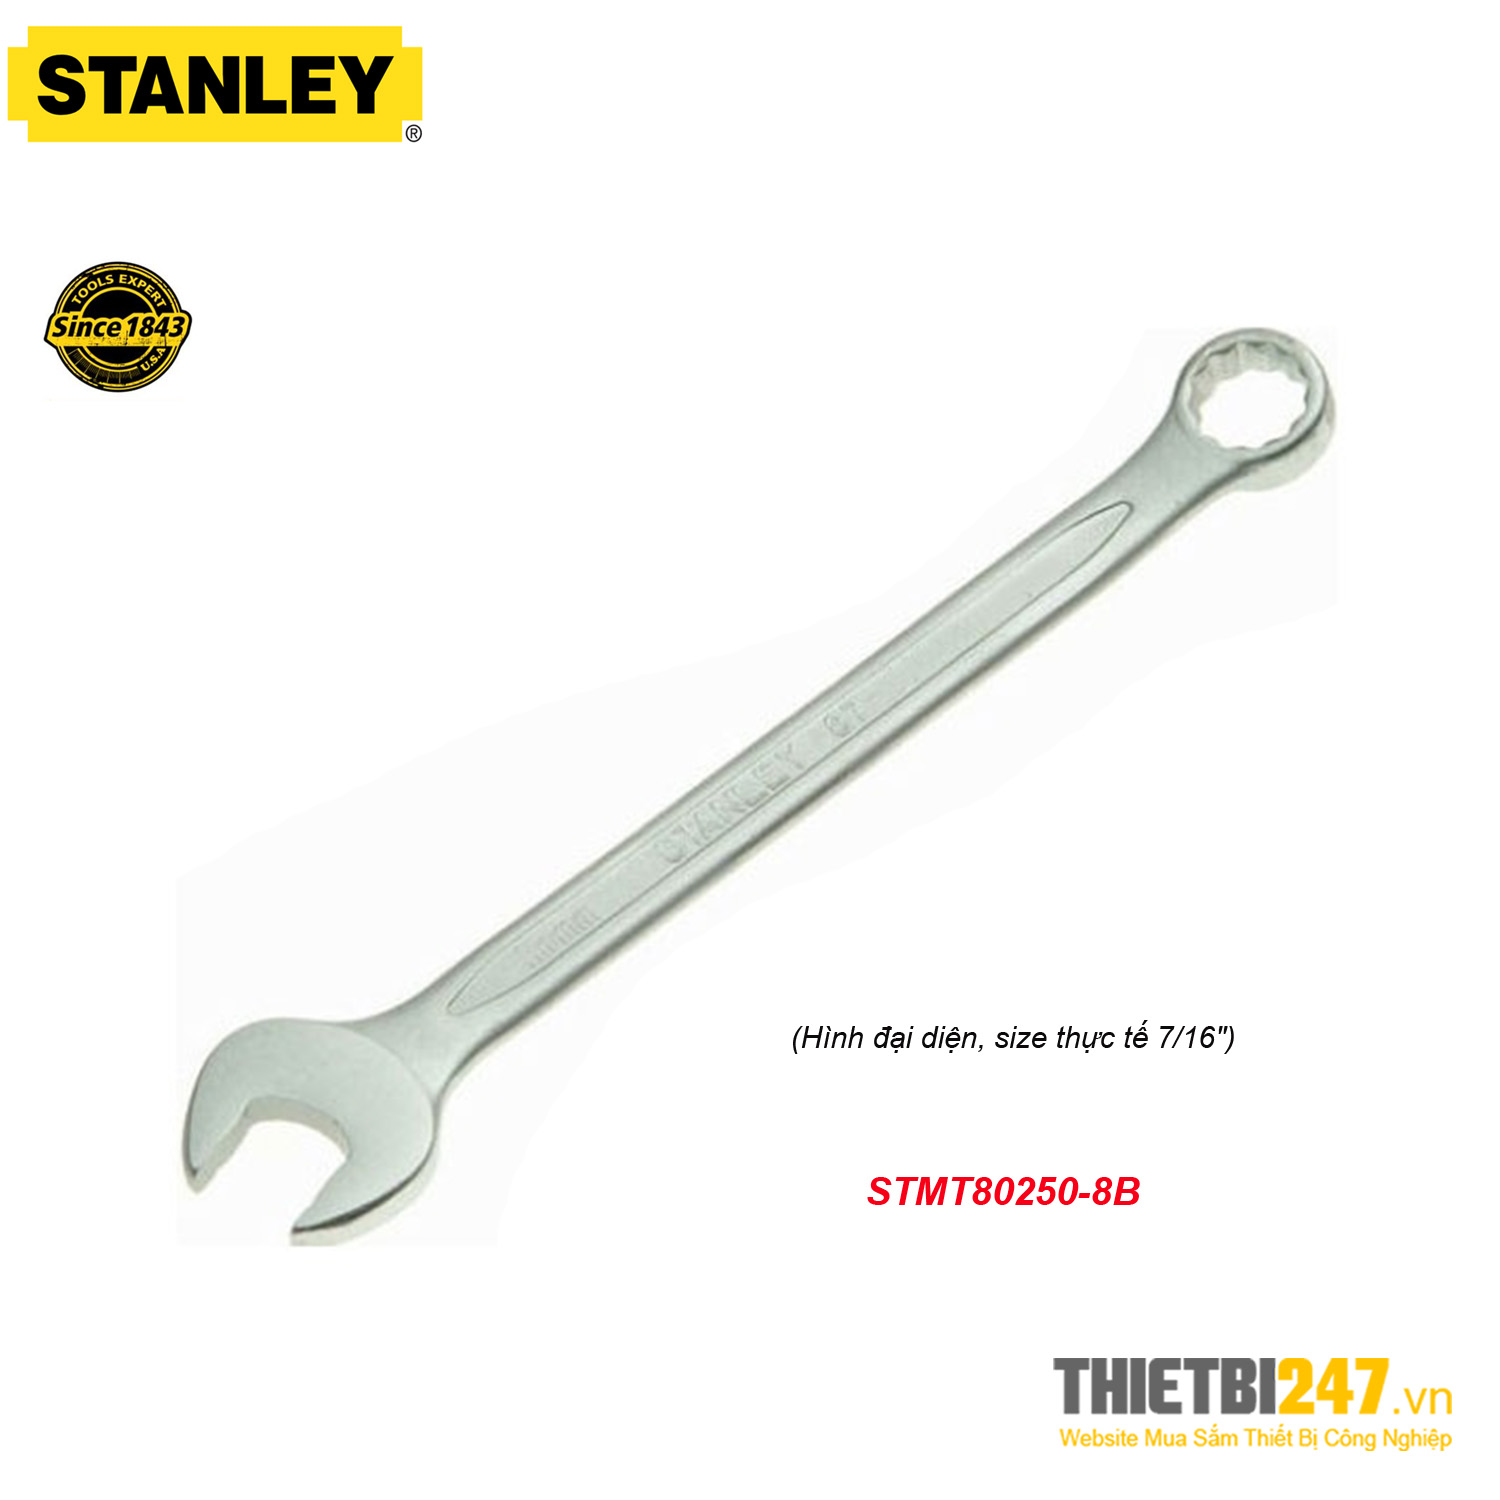 Cờ Lê Hệ Inch 7/16" Stanley STMT80250-8B Vòng-Miệng